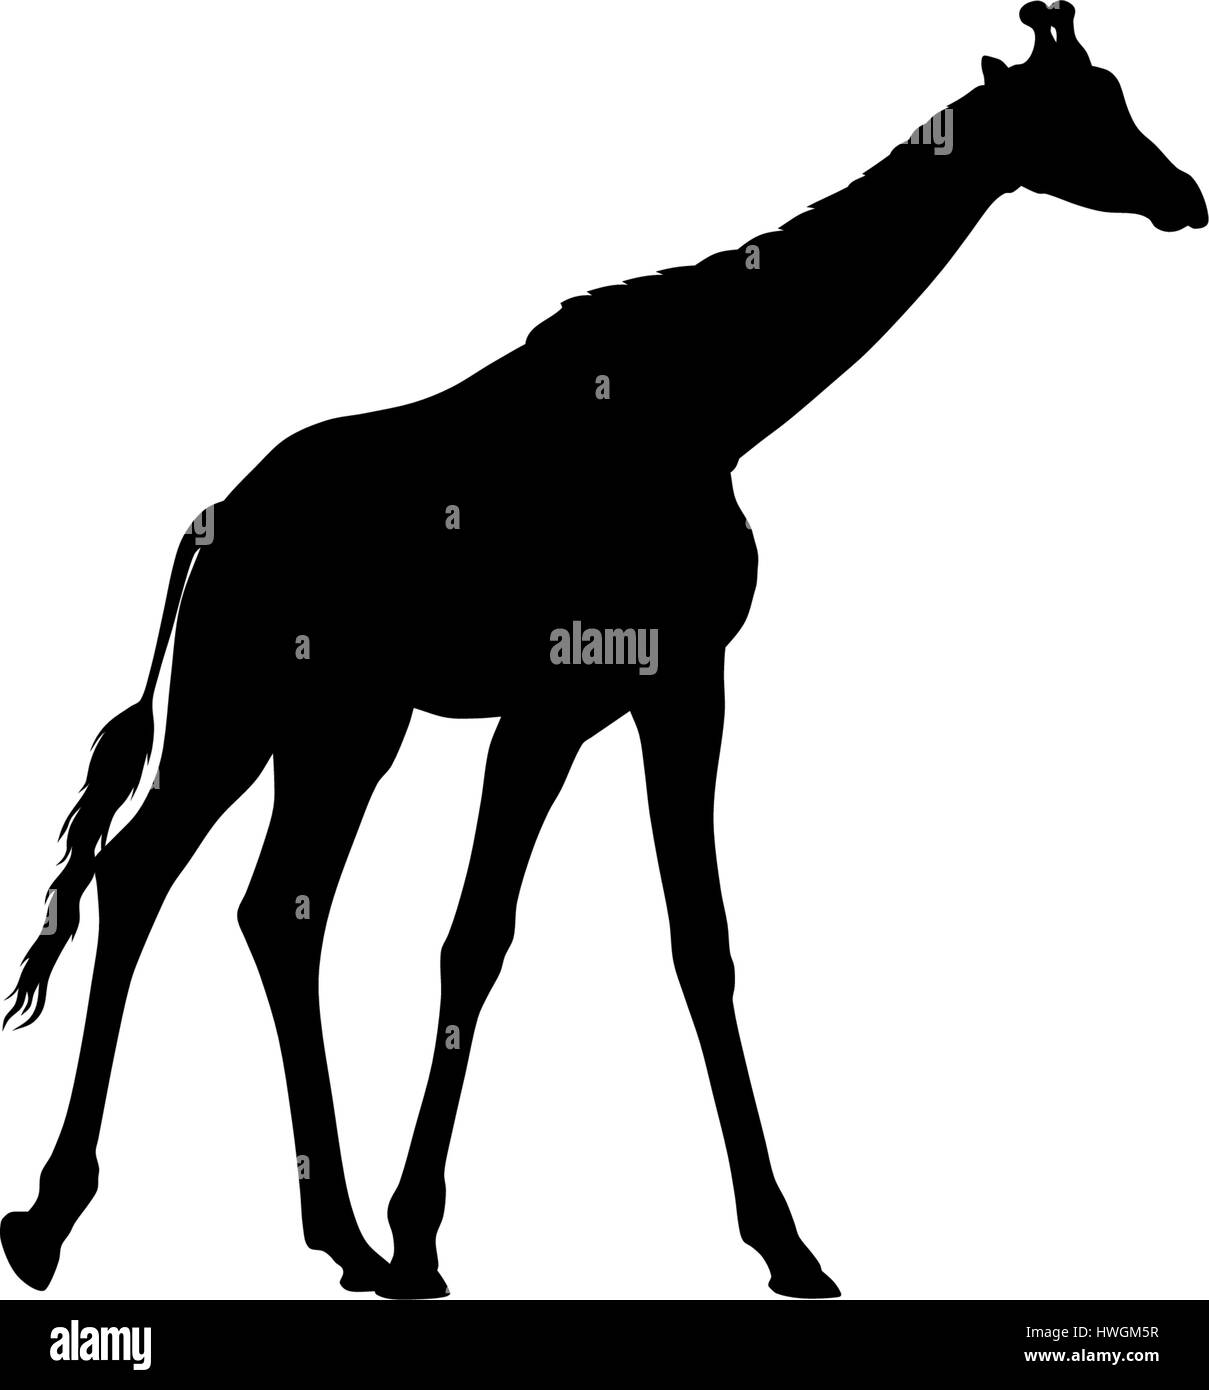 Abstraktes Vektor-Illustration einer Giraffen-Silhouette. Das Heck der Giraffe ist ein separates Element und kann an verschiedenen Standorten verschoben werden Stock Vektor